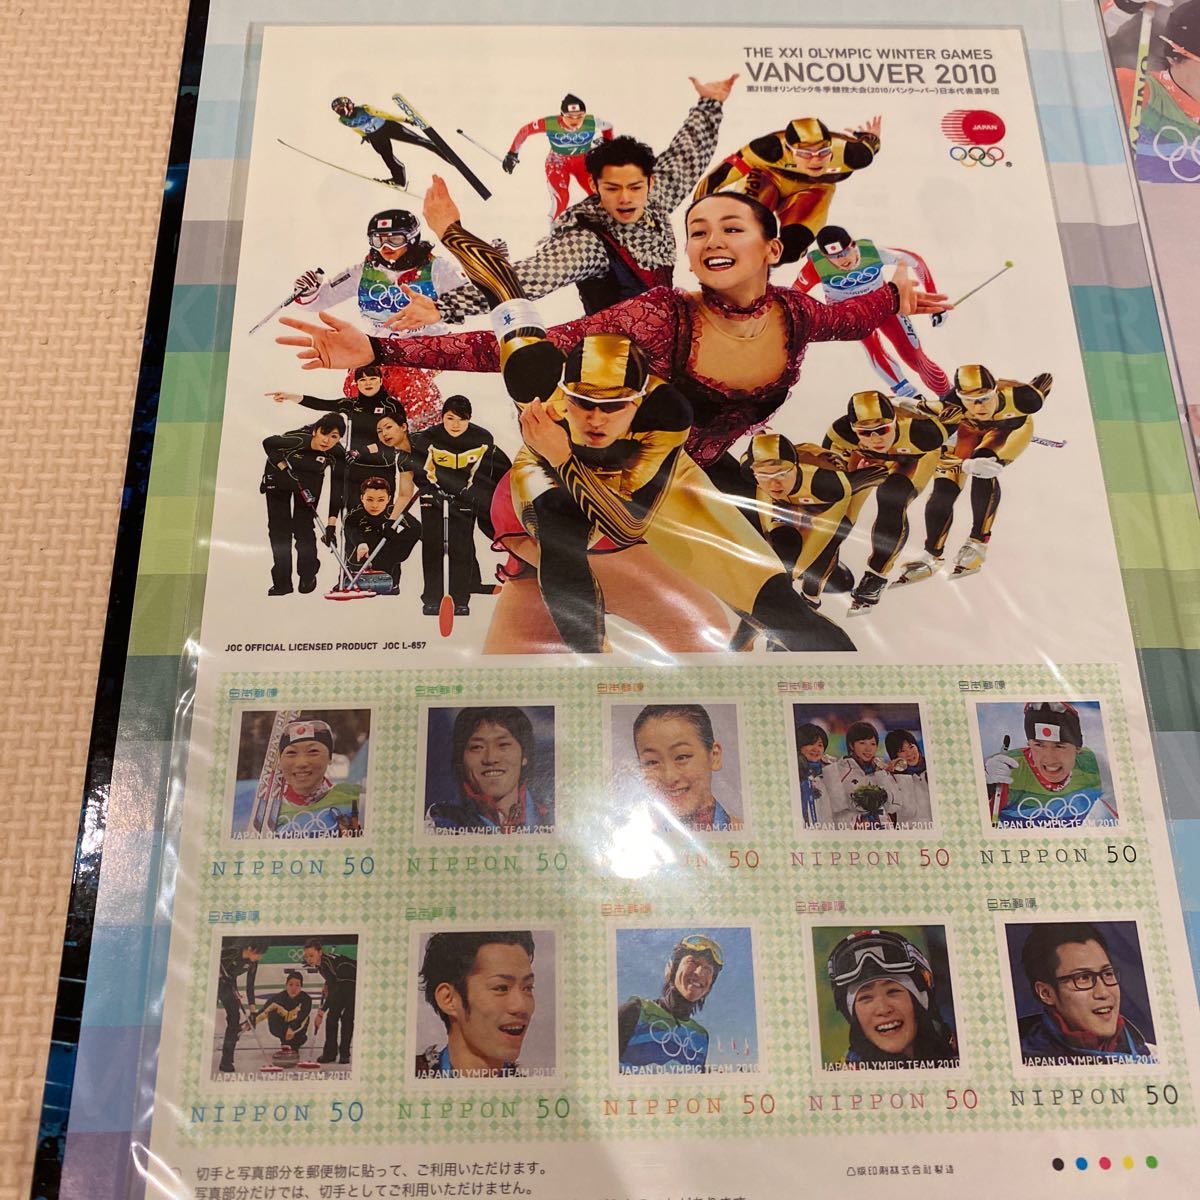 第21回オリンピック冬季競技大会10 バンクーバー日本代表選手団公式記念フレーム切手セット竞价